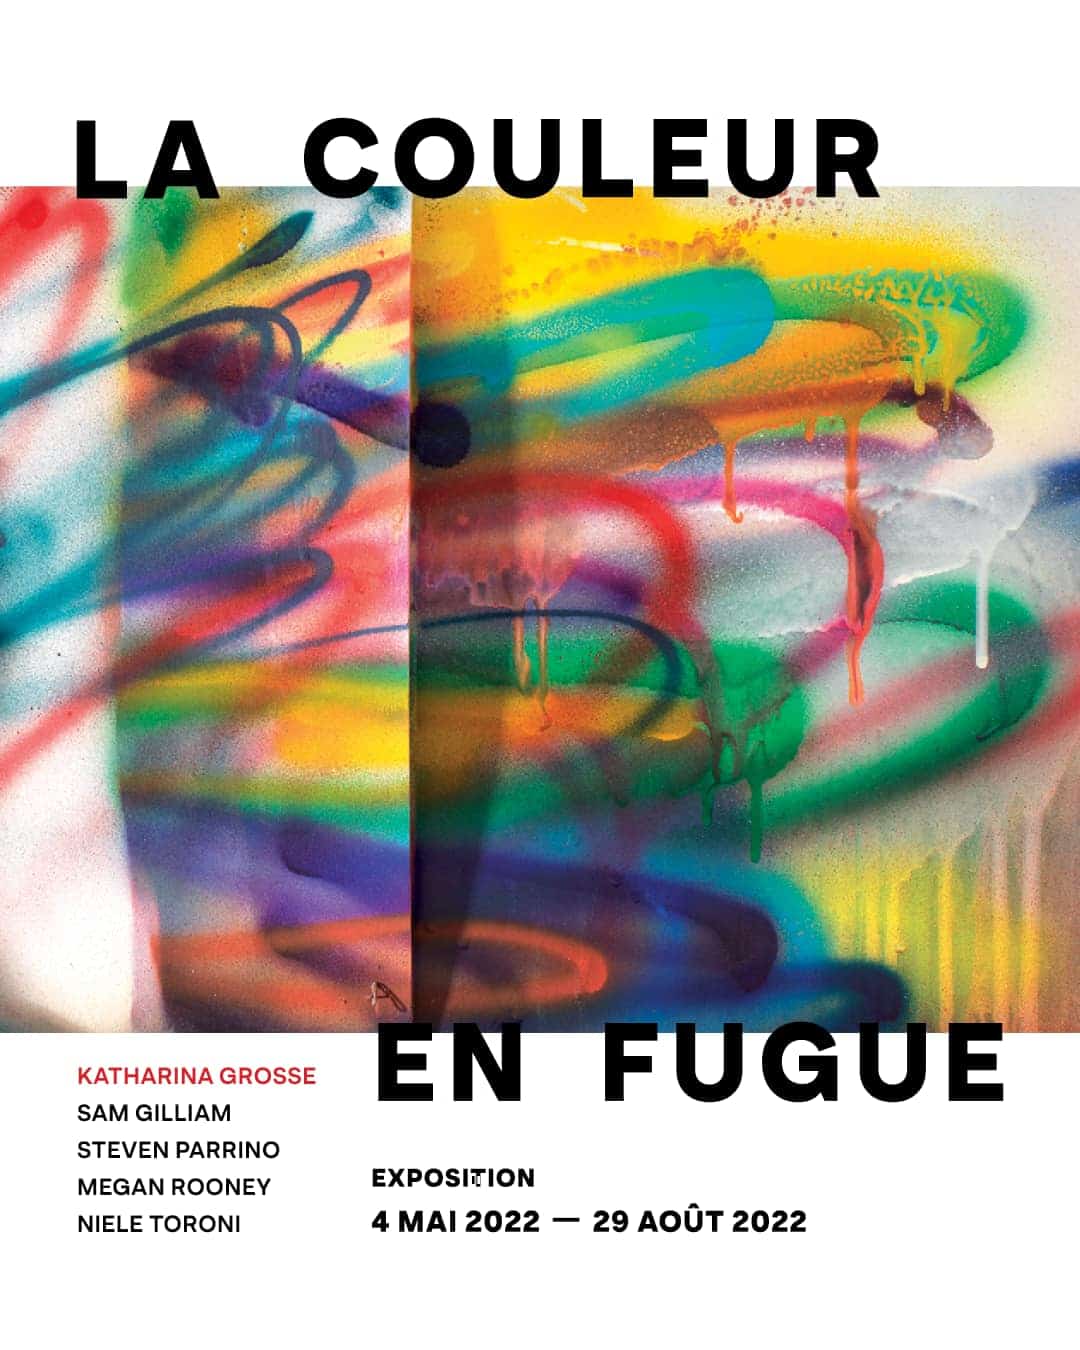 Megan Rooney  at Fondation Louis Vuitton La Couleur en Fugue